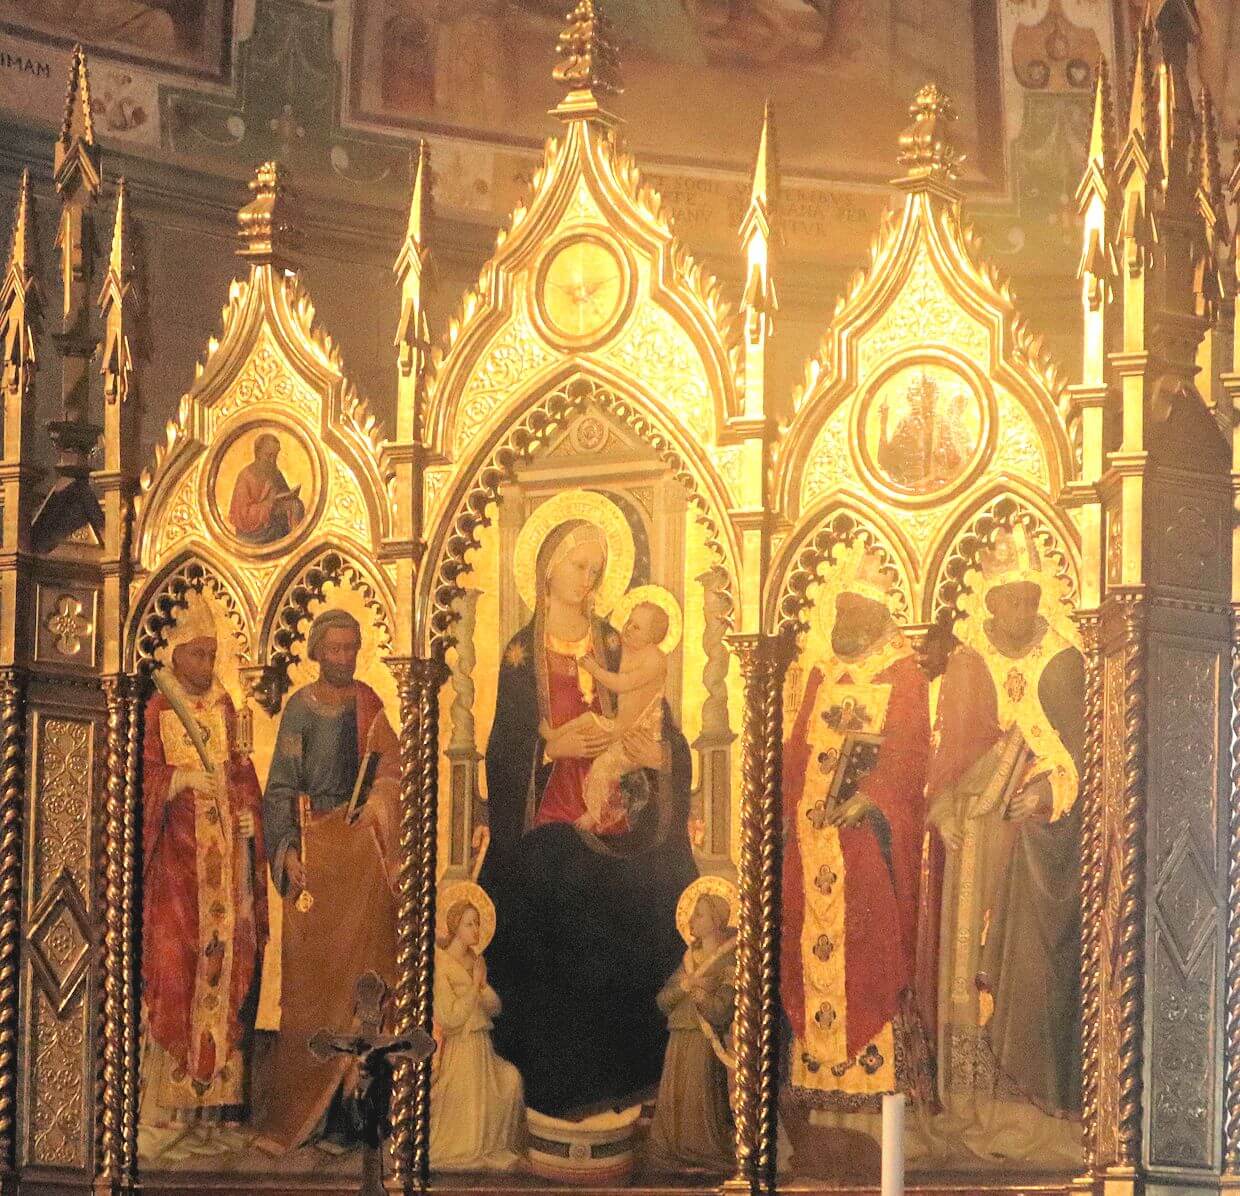 Bicci di Lorenzo: Alexander (links), Petrus (halblinks), Maria, Romulus von Fiesole (halbrechts) und Donatus der Schotte (rechts), Hochaltarbild, 1450, im Dom in Fiesole